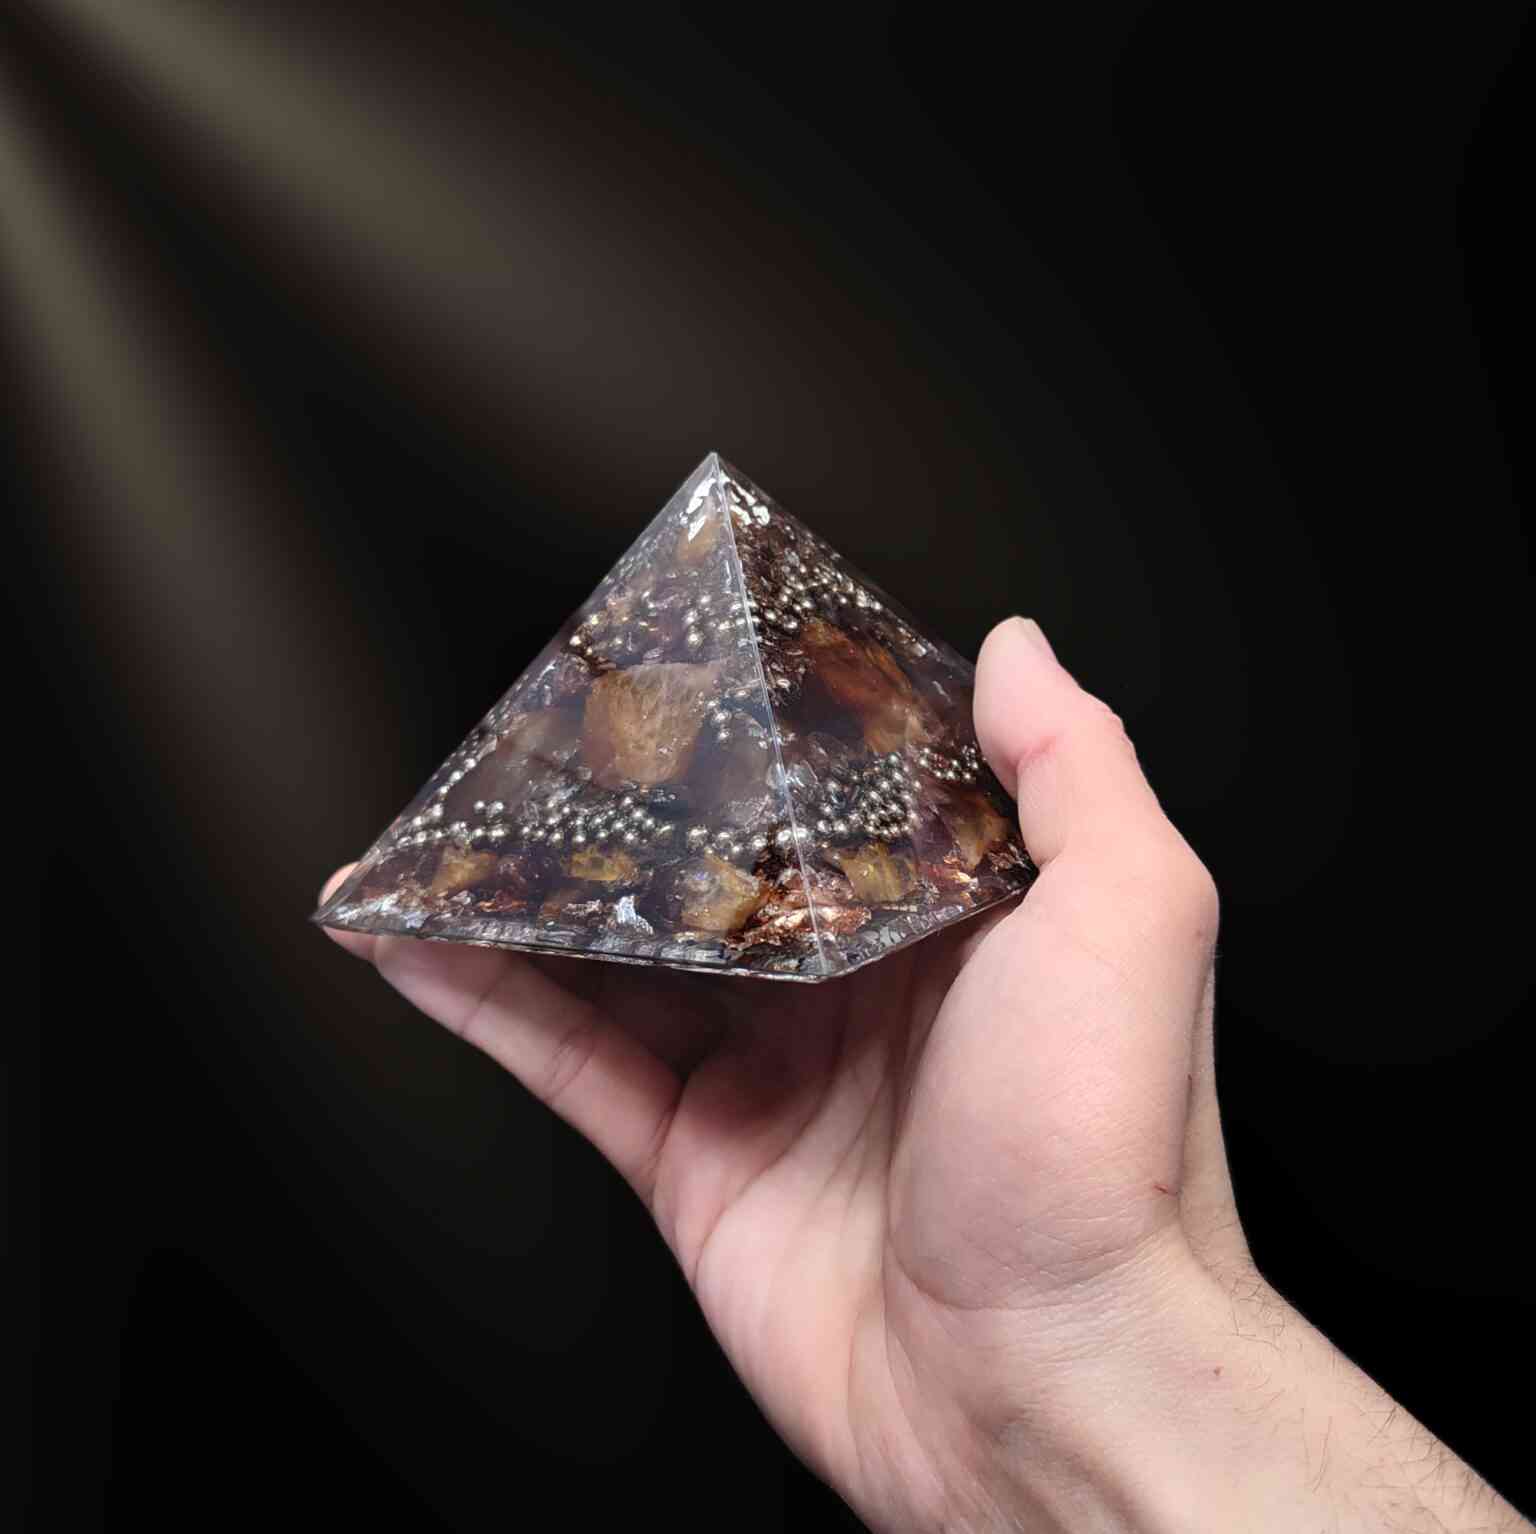 Braun & silberfarbene Orgonit Pyramide mittlerer Größe mit Edelsteinen.